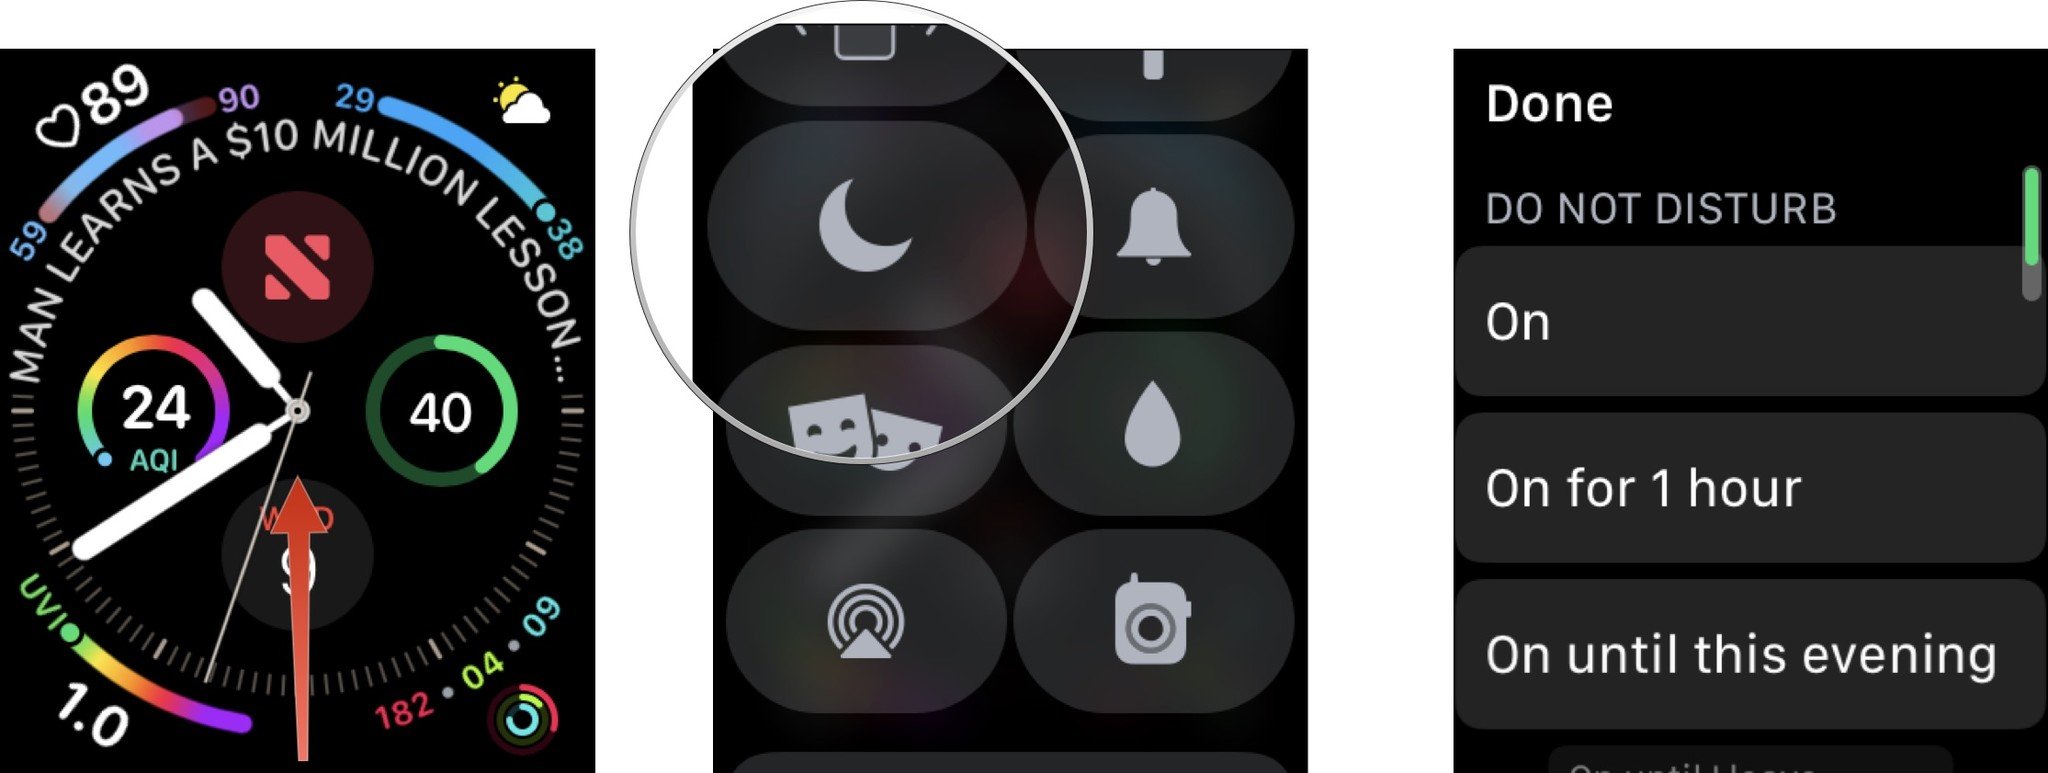 Чтобы вручную включить Apple Watch «Не беспокоить» на Apple Watch, нажмите цифровую корону, проведите вверх и выберите Пункт управления.  Коснитесь кнопки «Не беспокоить».  Выберите продолжительность режима «Не беспокоить».